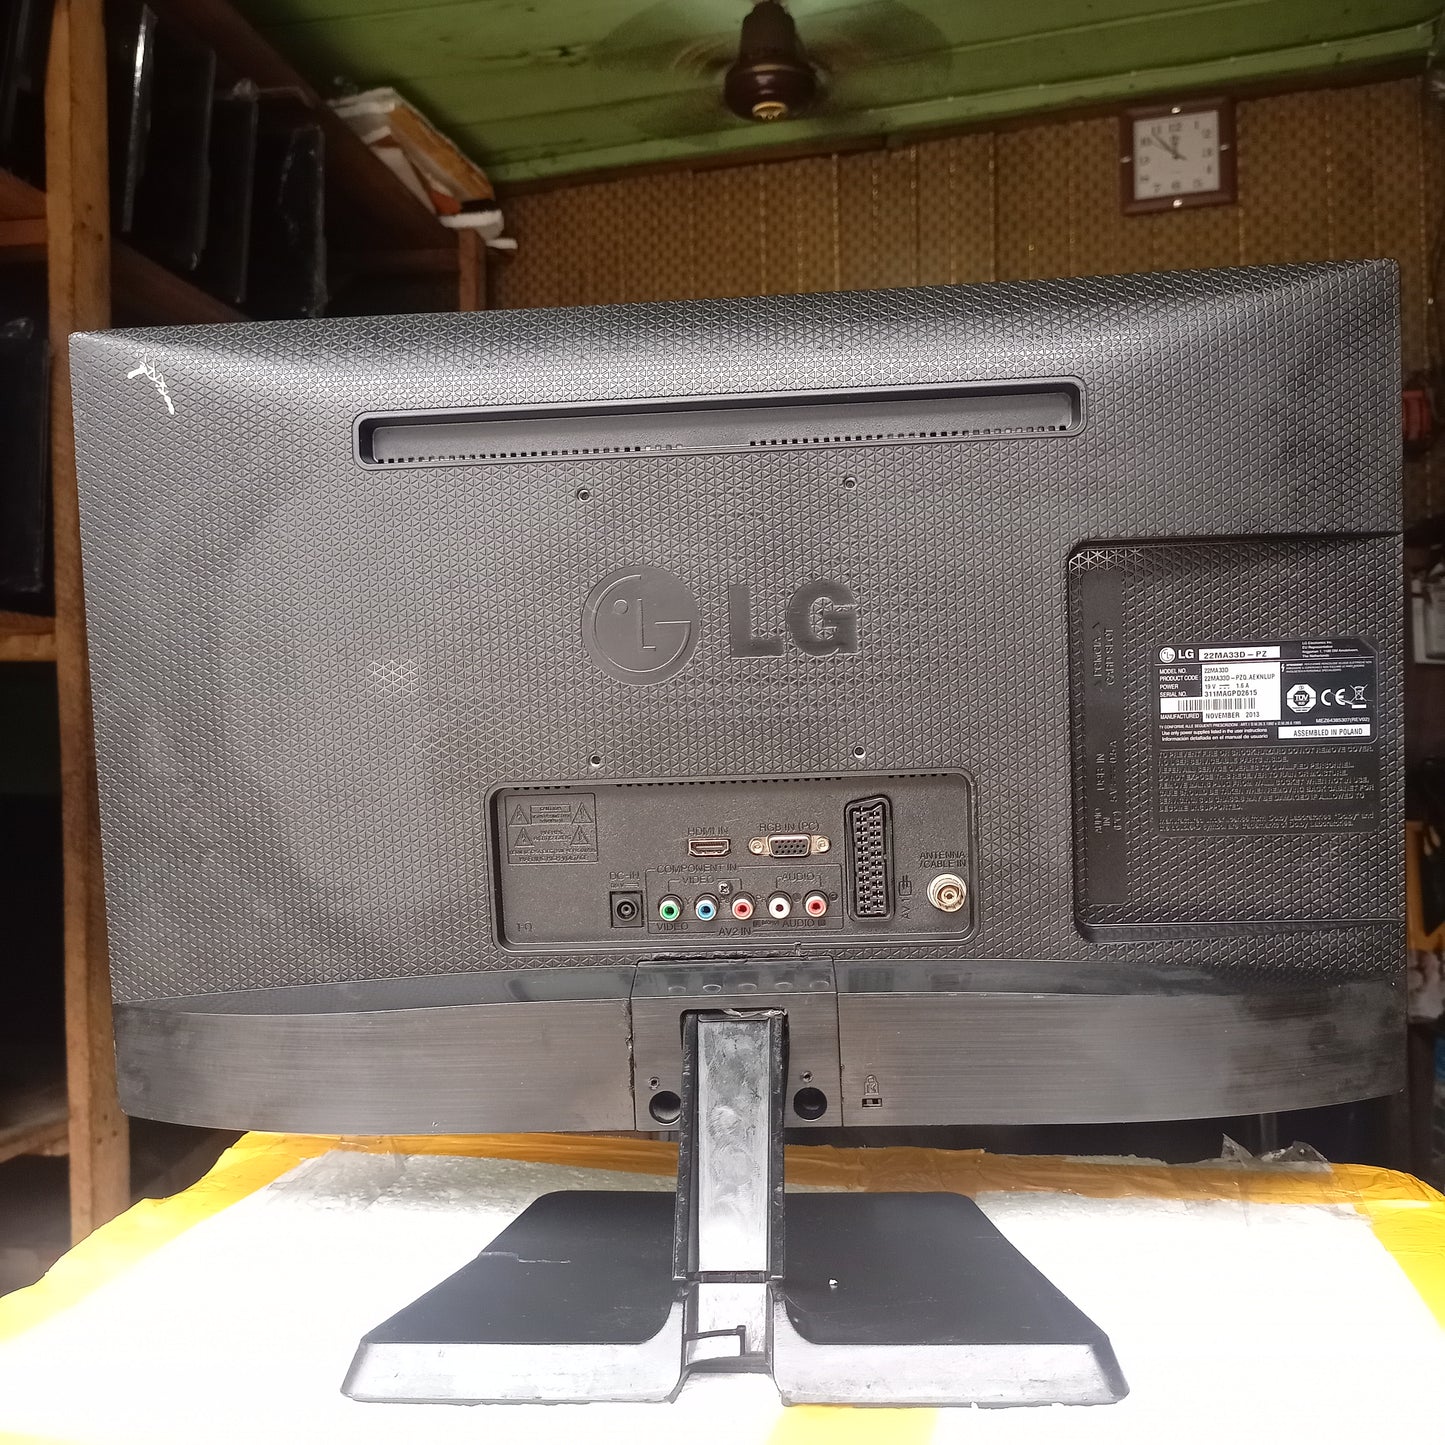 LG 22 Inch 22MA33D-PZ Full HD LED TV (DC-19V Powered) - Back View